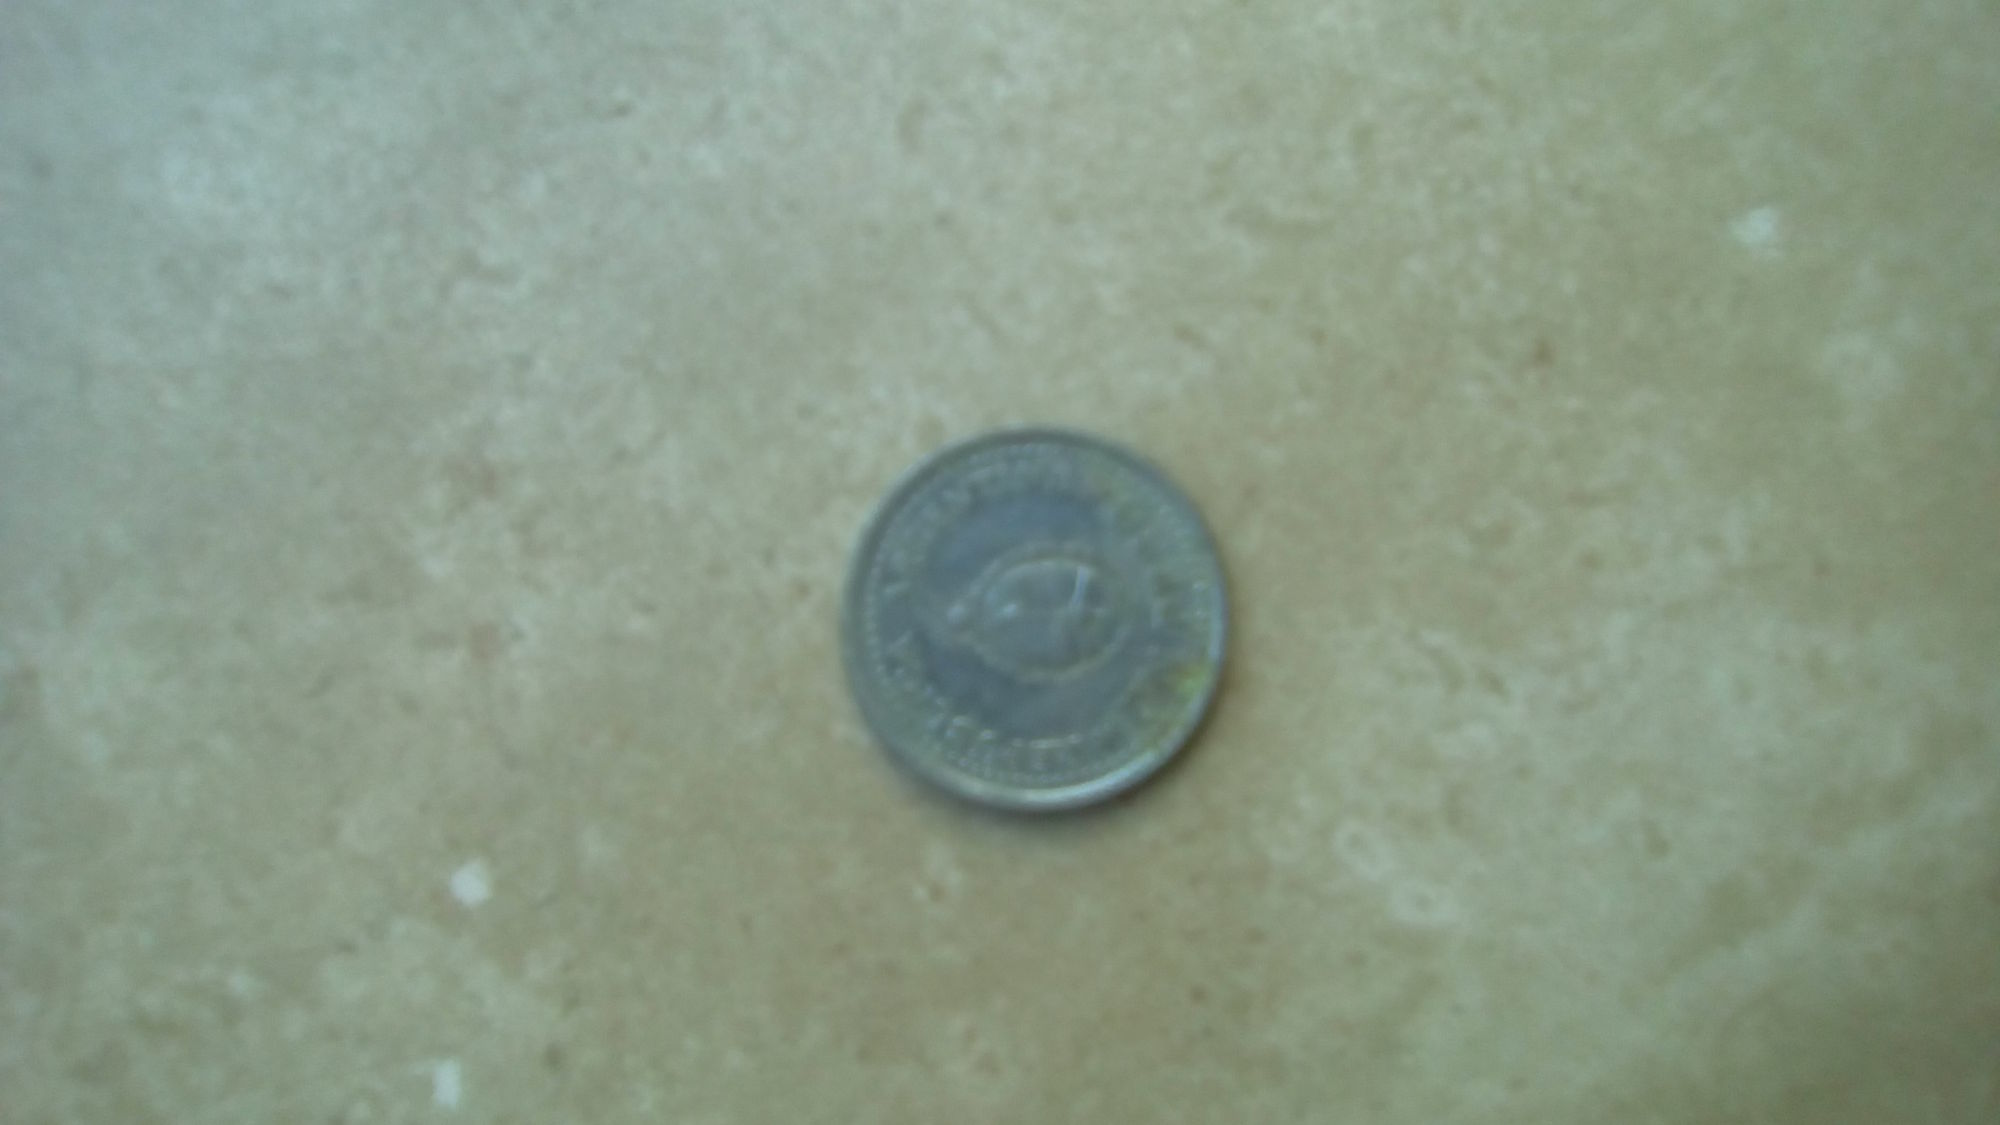 moneda conmemorativa de 1960